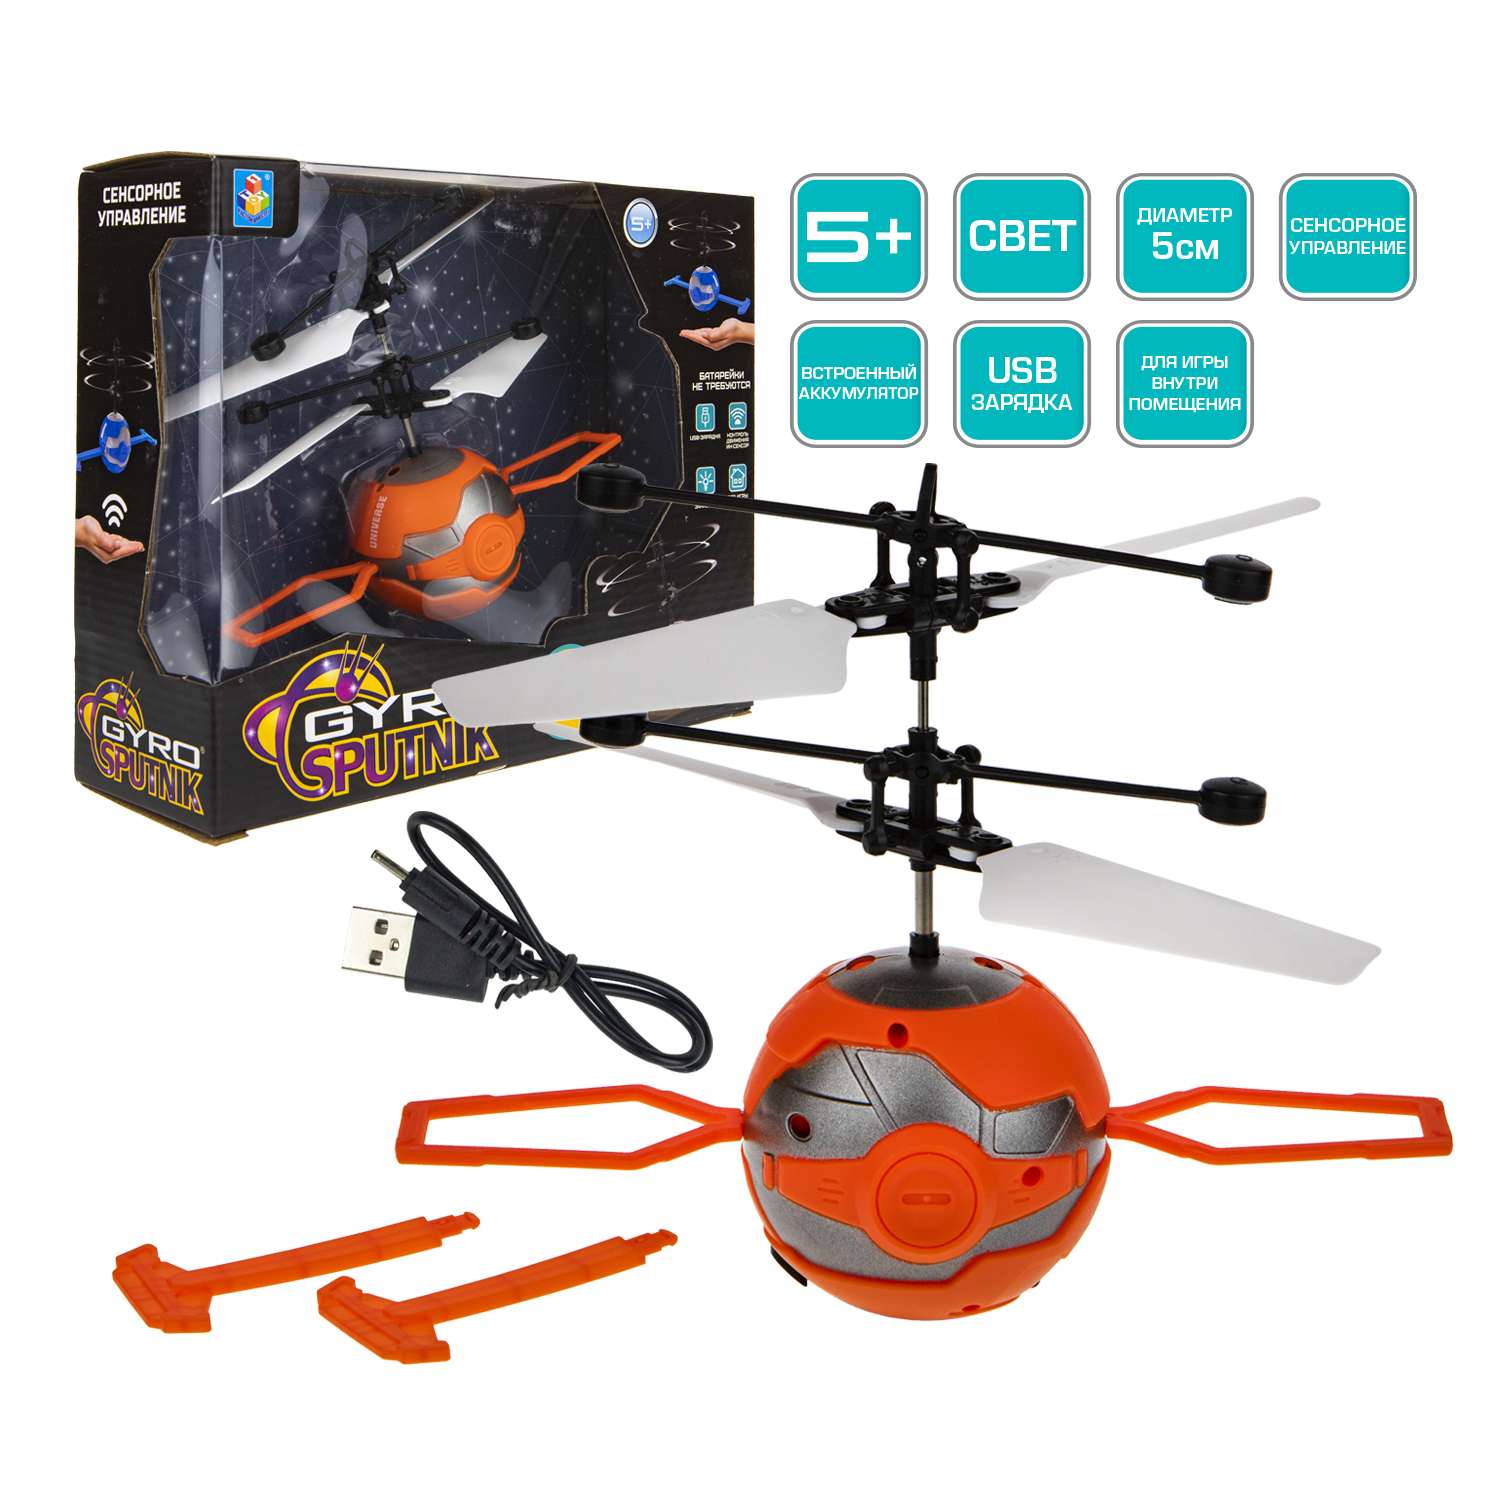 Интерактивная игрушка 1TOY Gyro-SPUTNIK шар с лопастями на сенсорном управлении со светом - фото 2